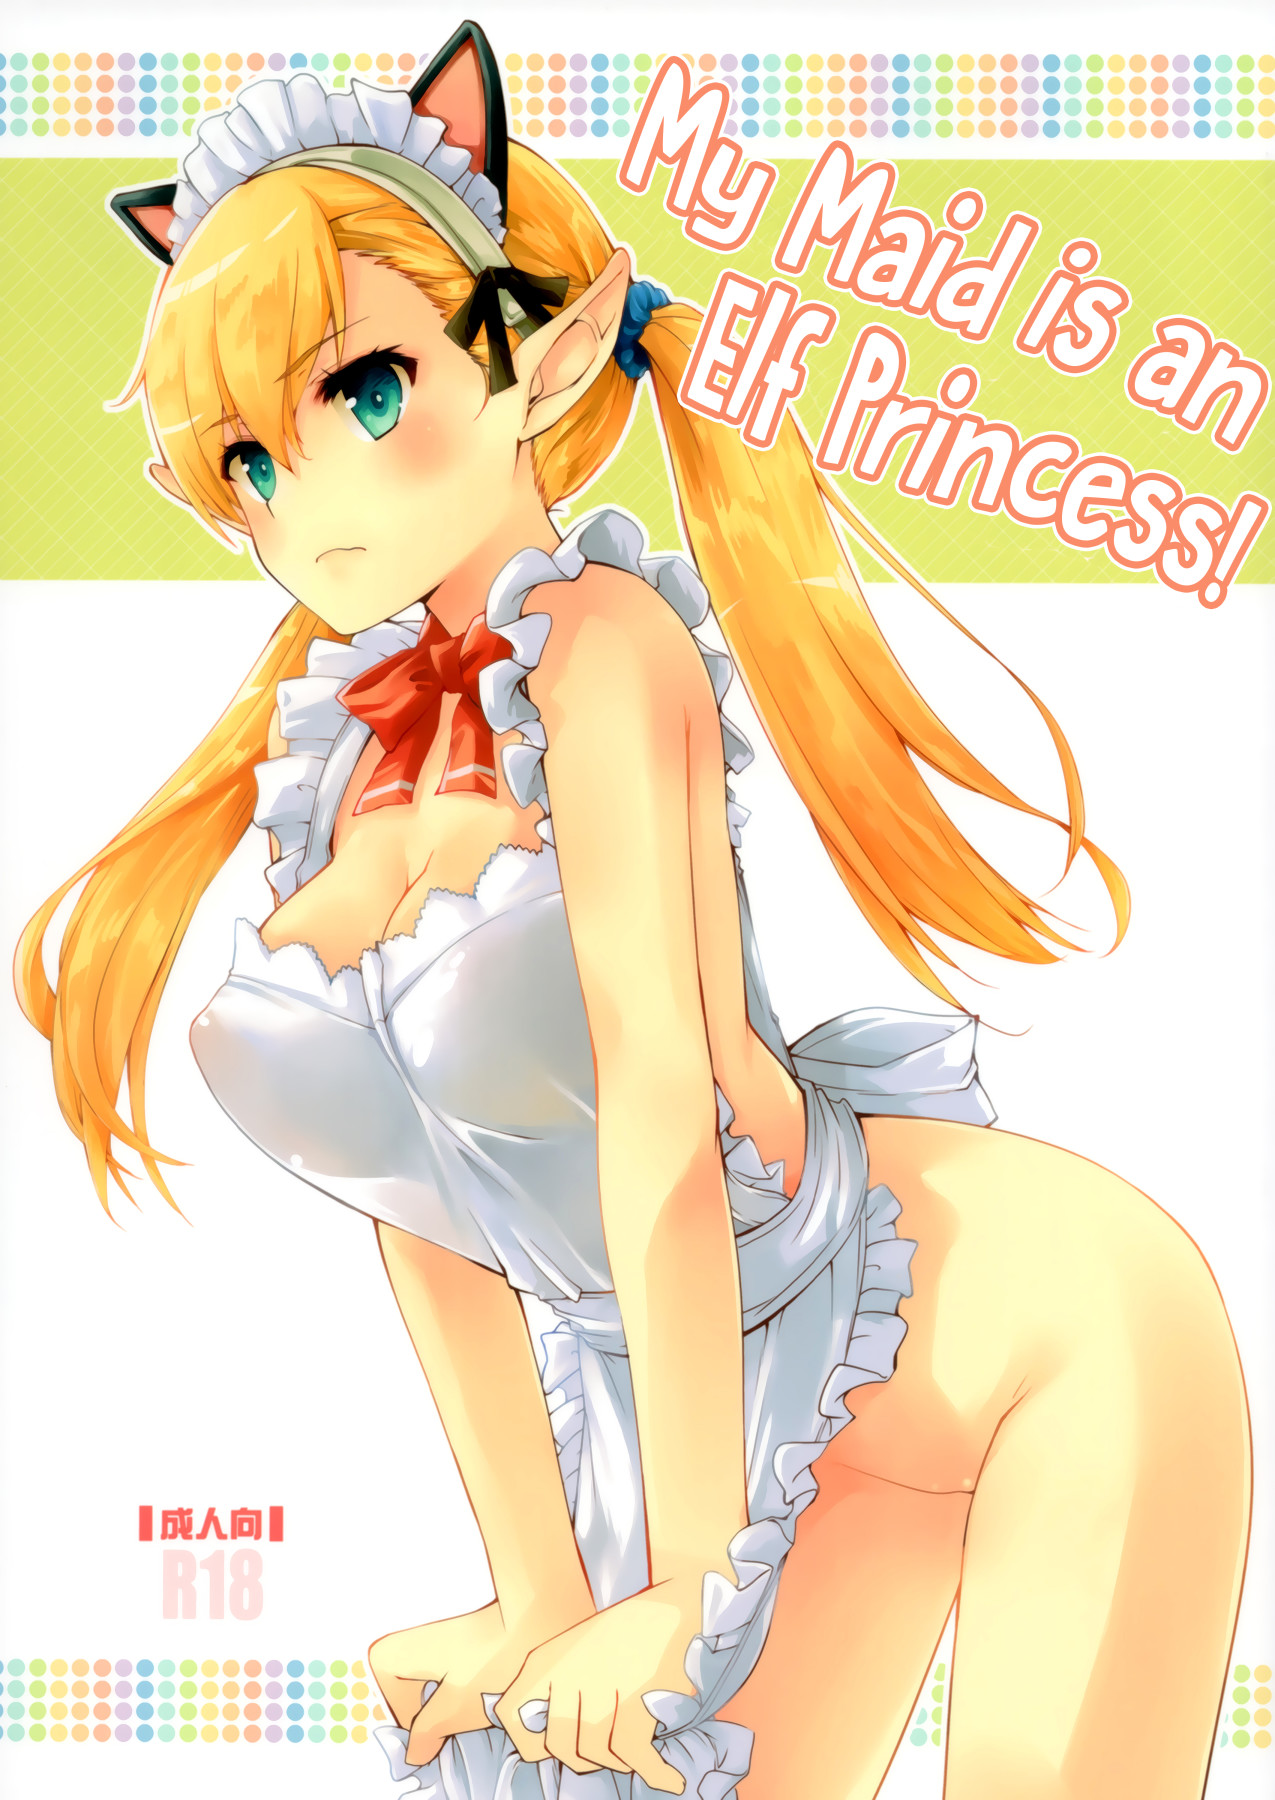 Hentai Manga Comic-My Maid is an Elf Princess!-Read-1